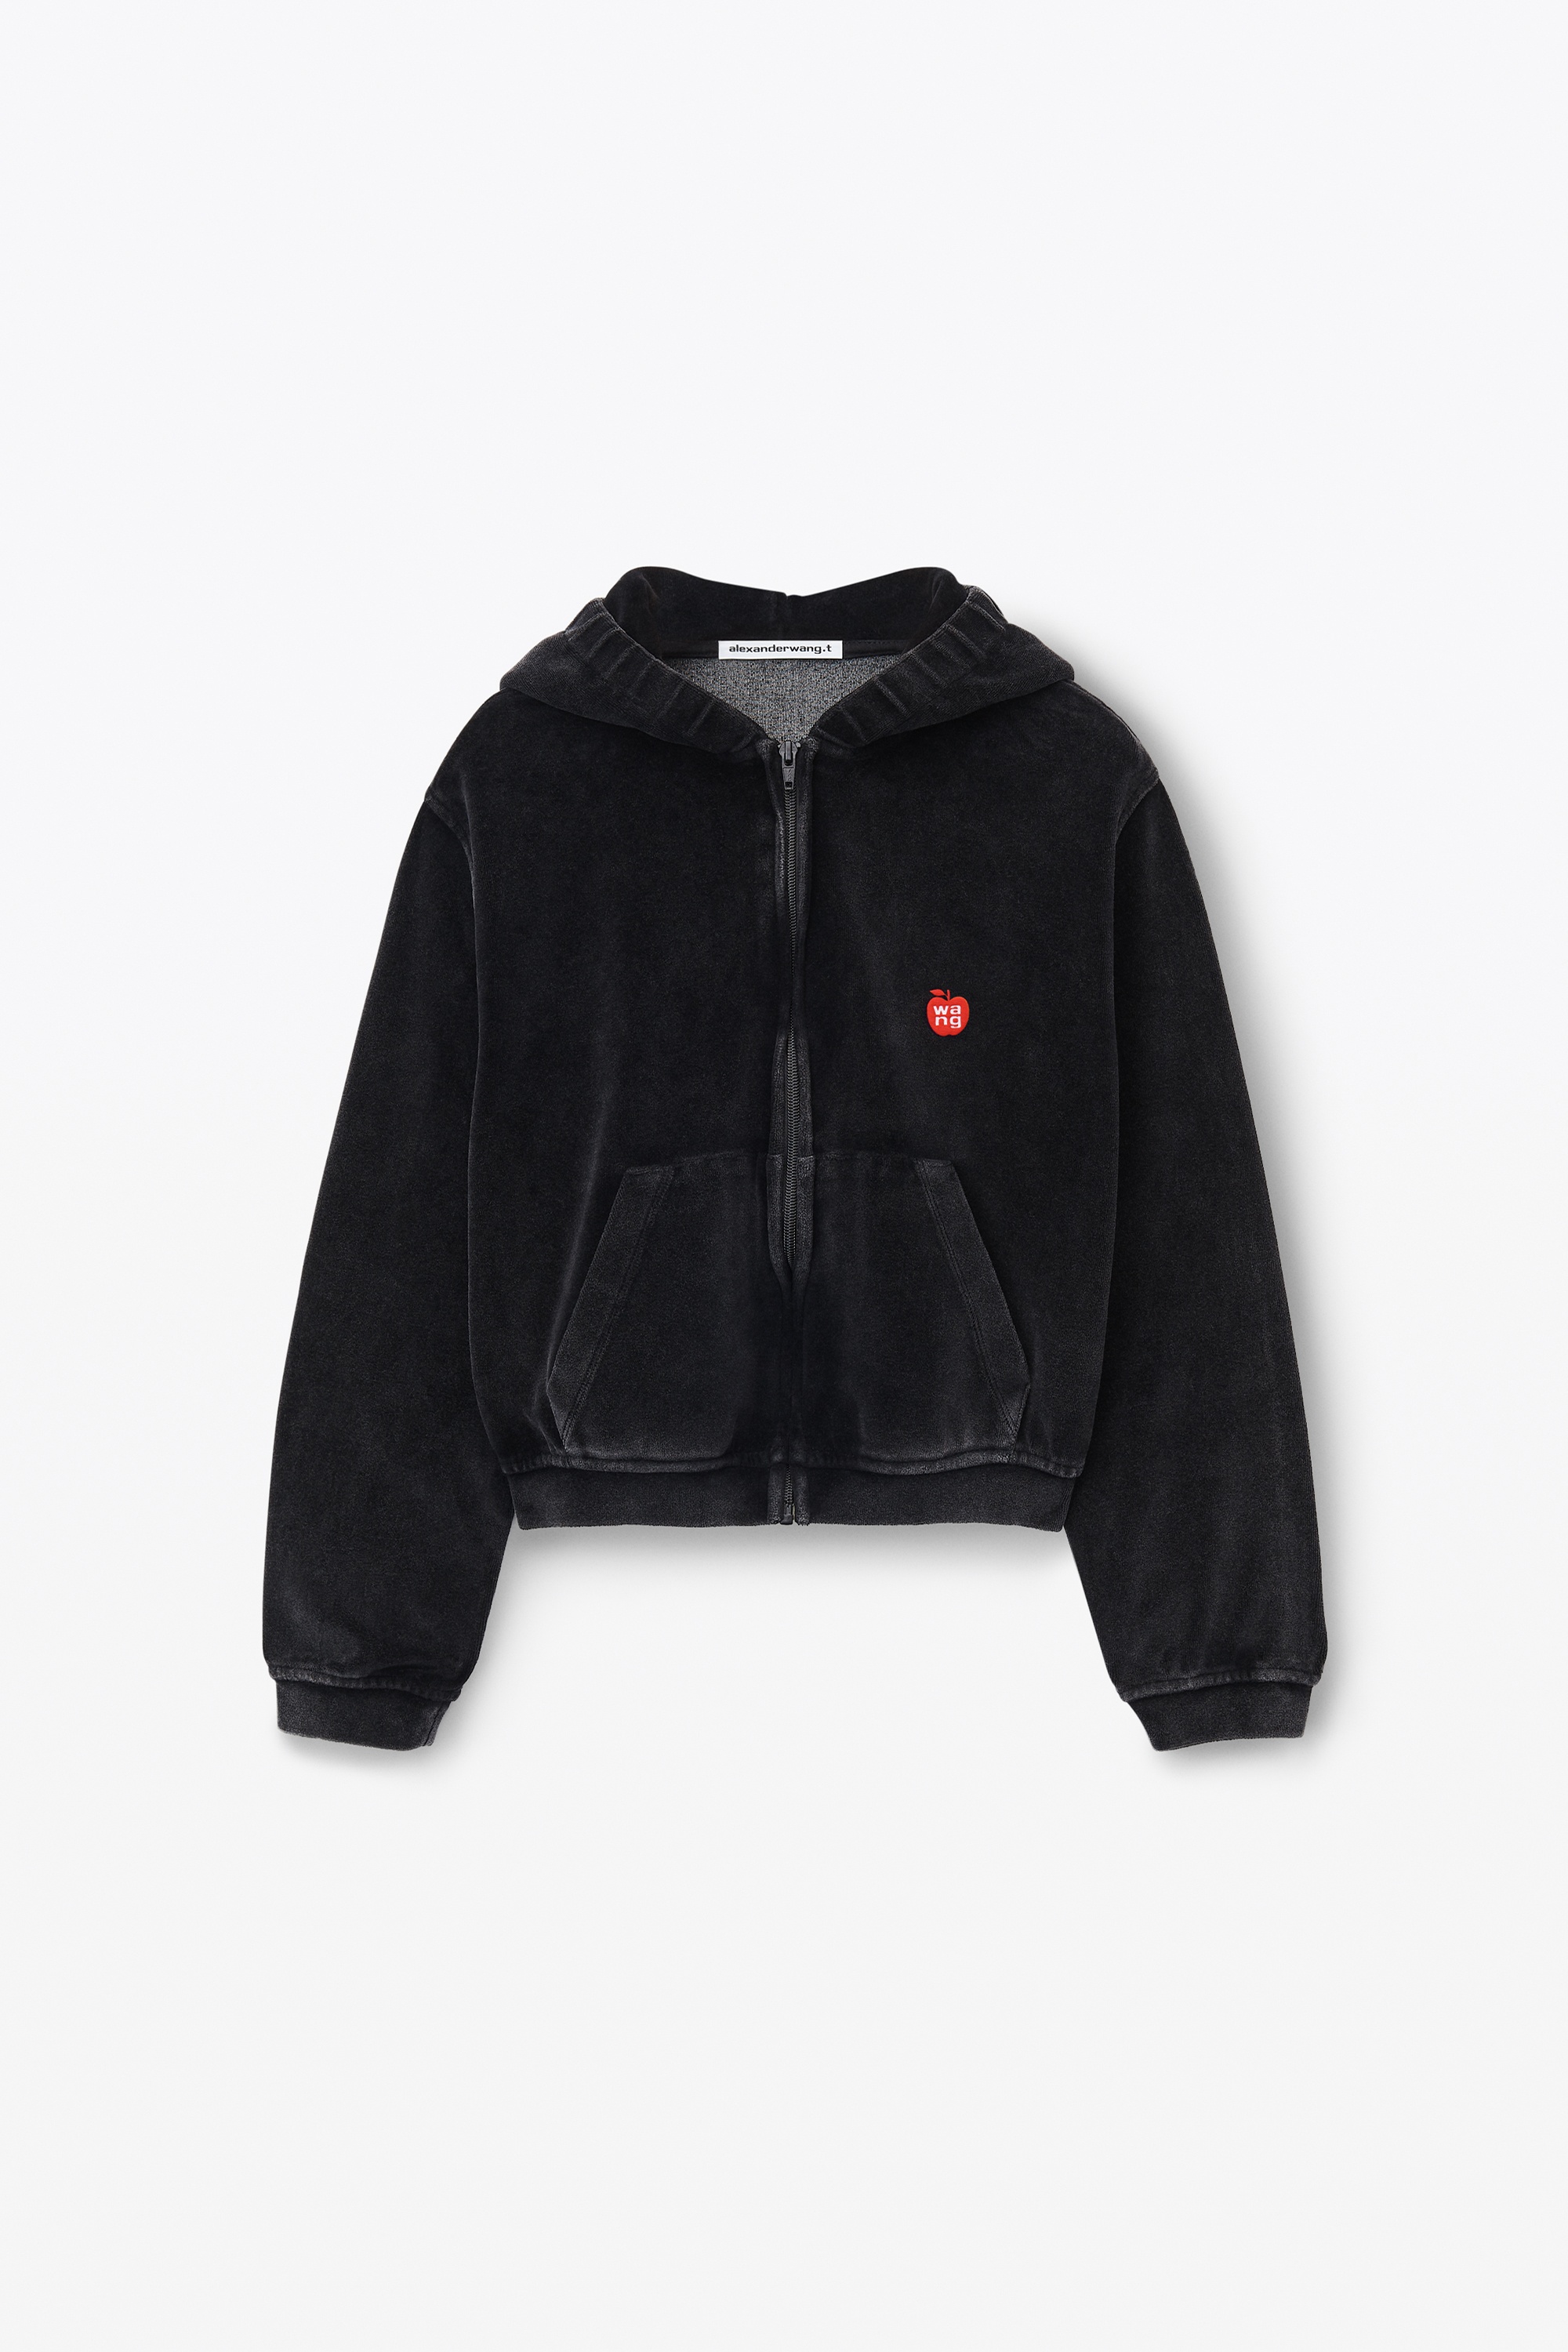 apple logo shrunken zip up hoodie in velour - 1